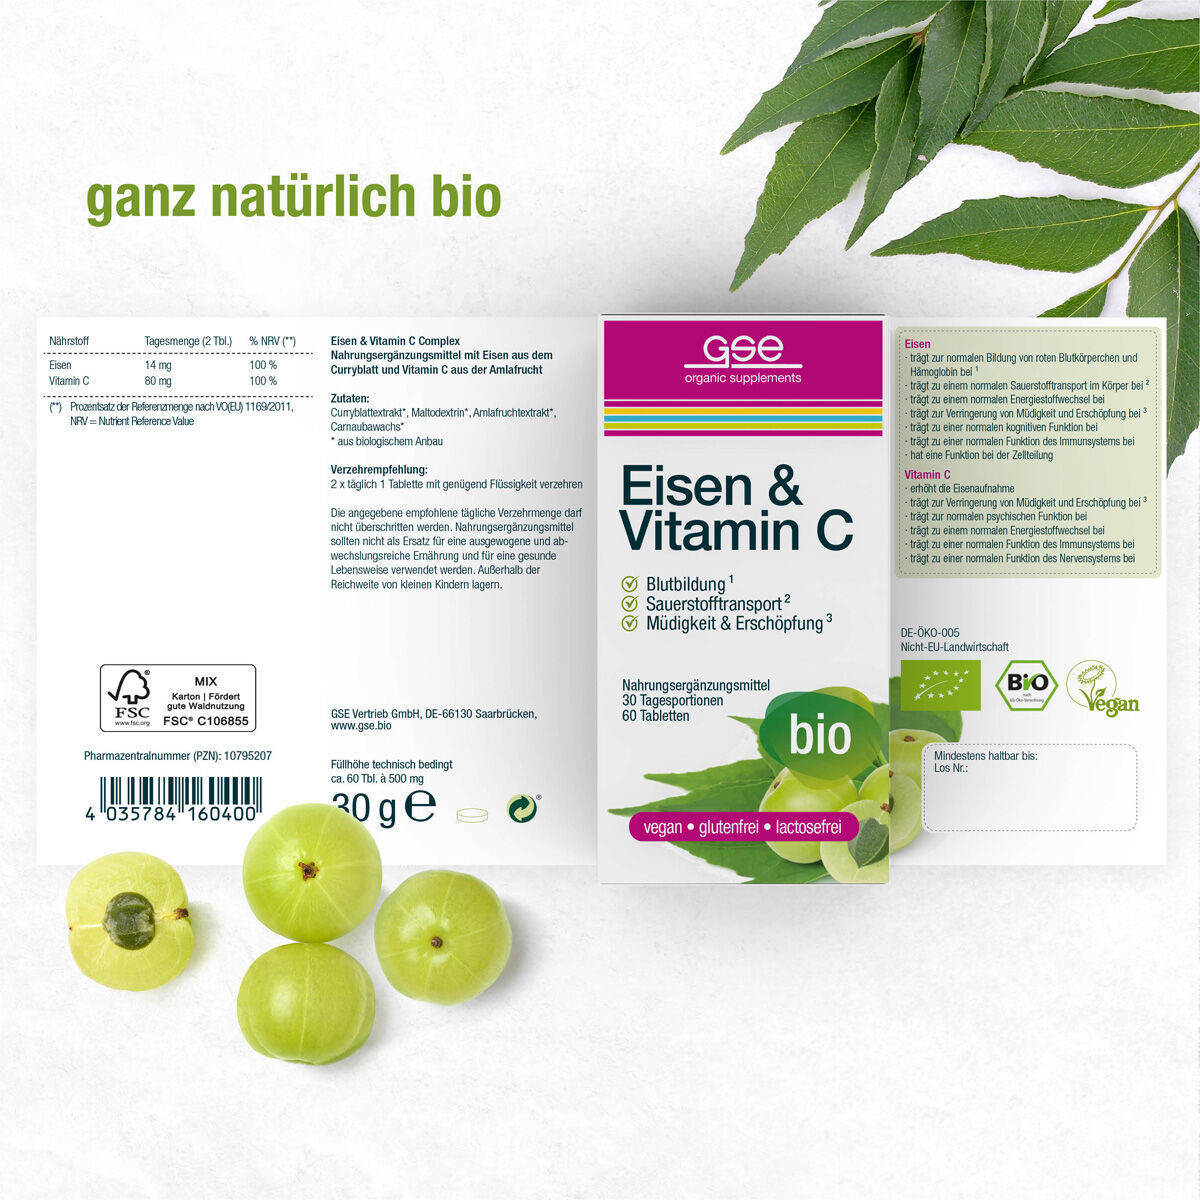 Eisen & Vitamin C Complex (Bio)